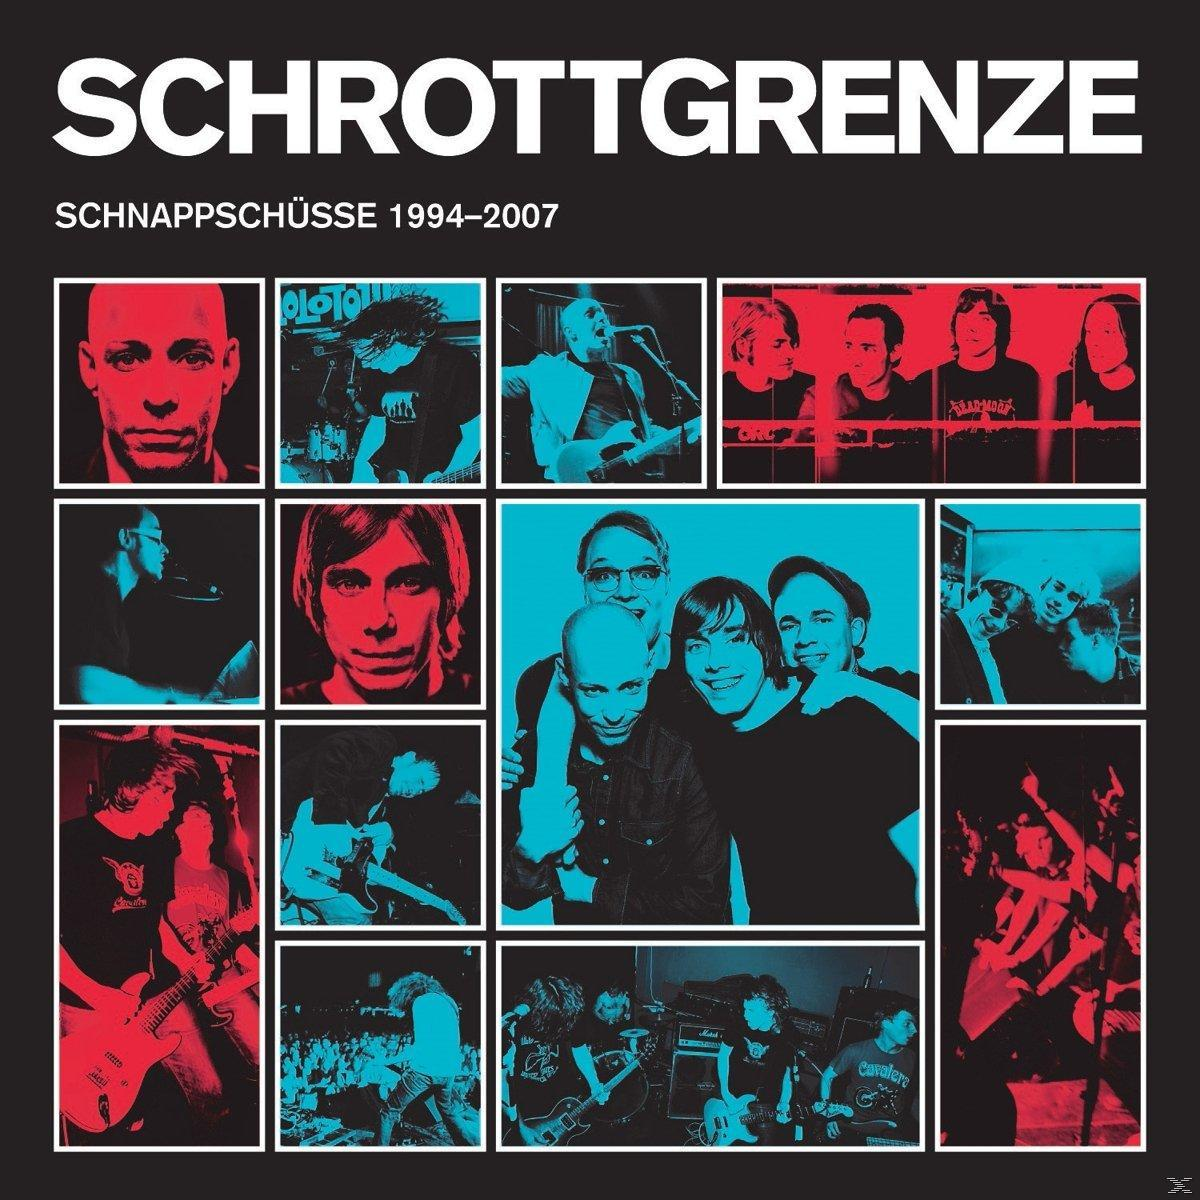 Schnappschüsse - Schrottgrenze (Vinyl) - 1994-2007